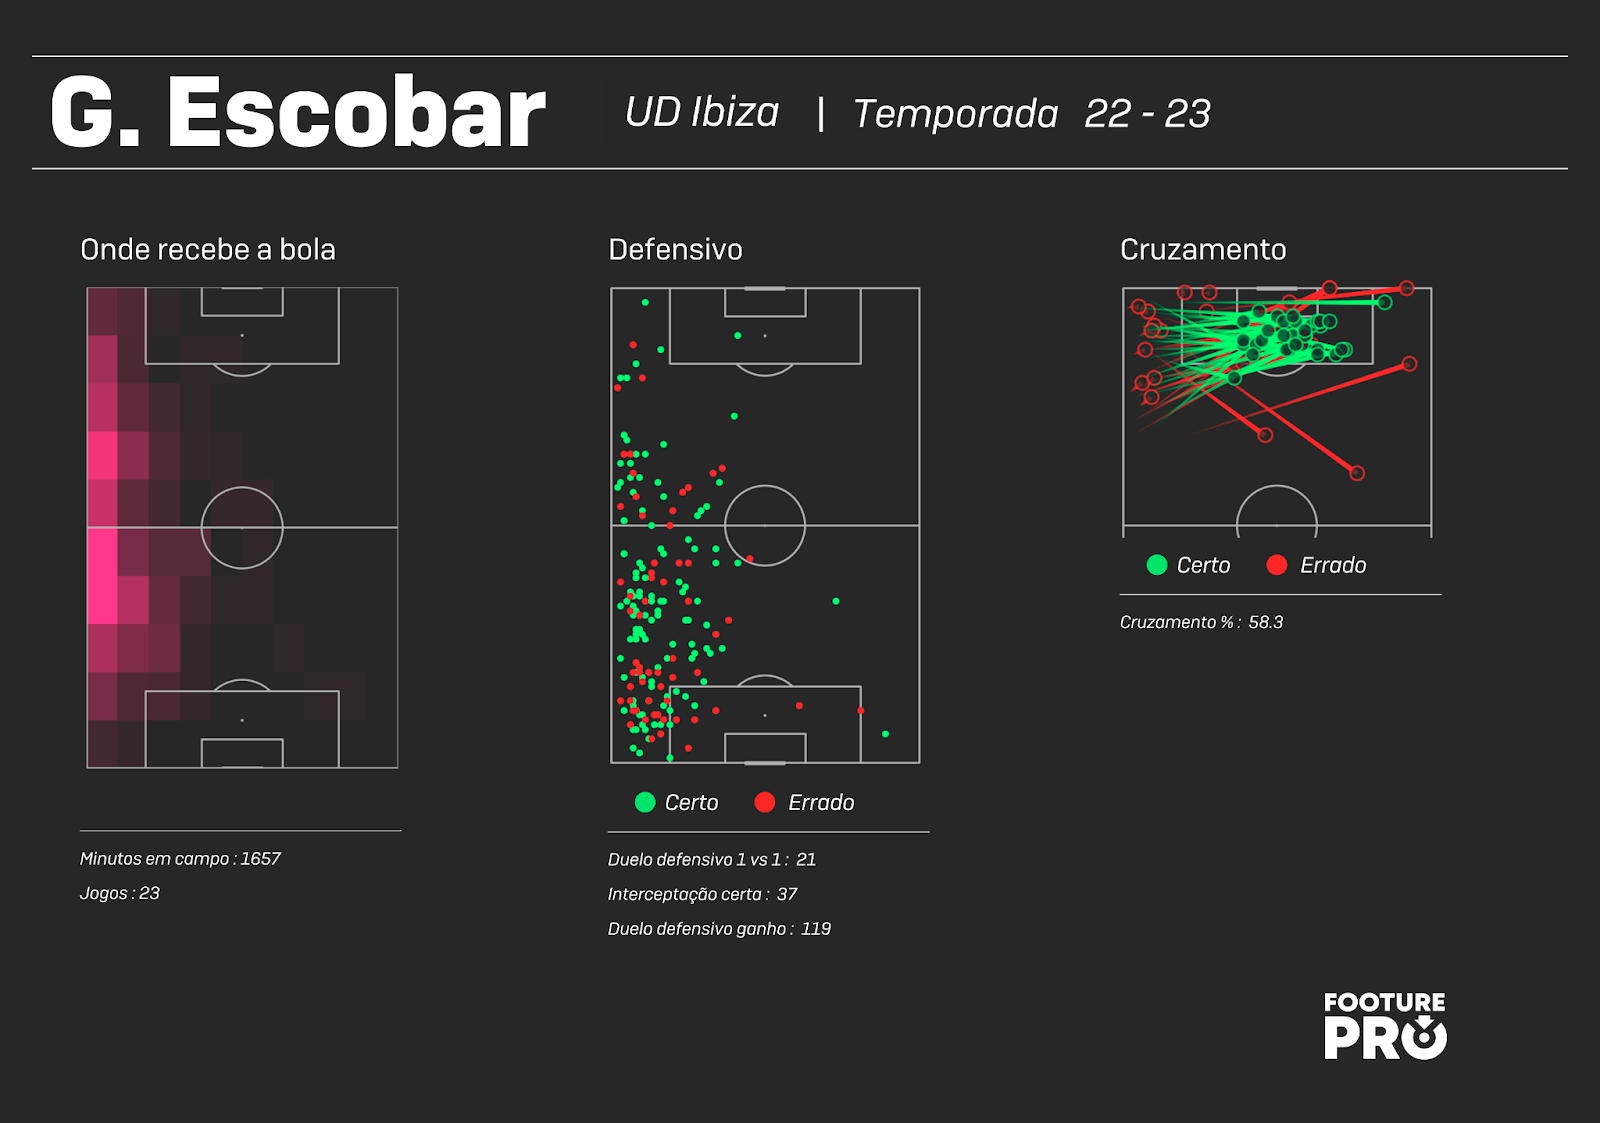 Cruzeiro: Com seis jogos sem vencer, dados mostram dificuldade ofensiva e  defensiva em campo